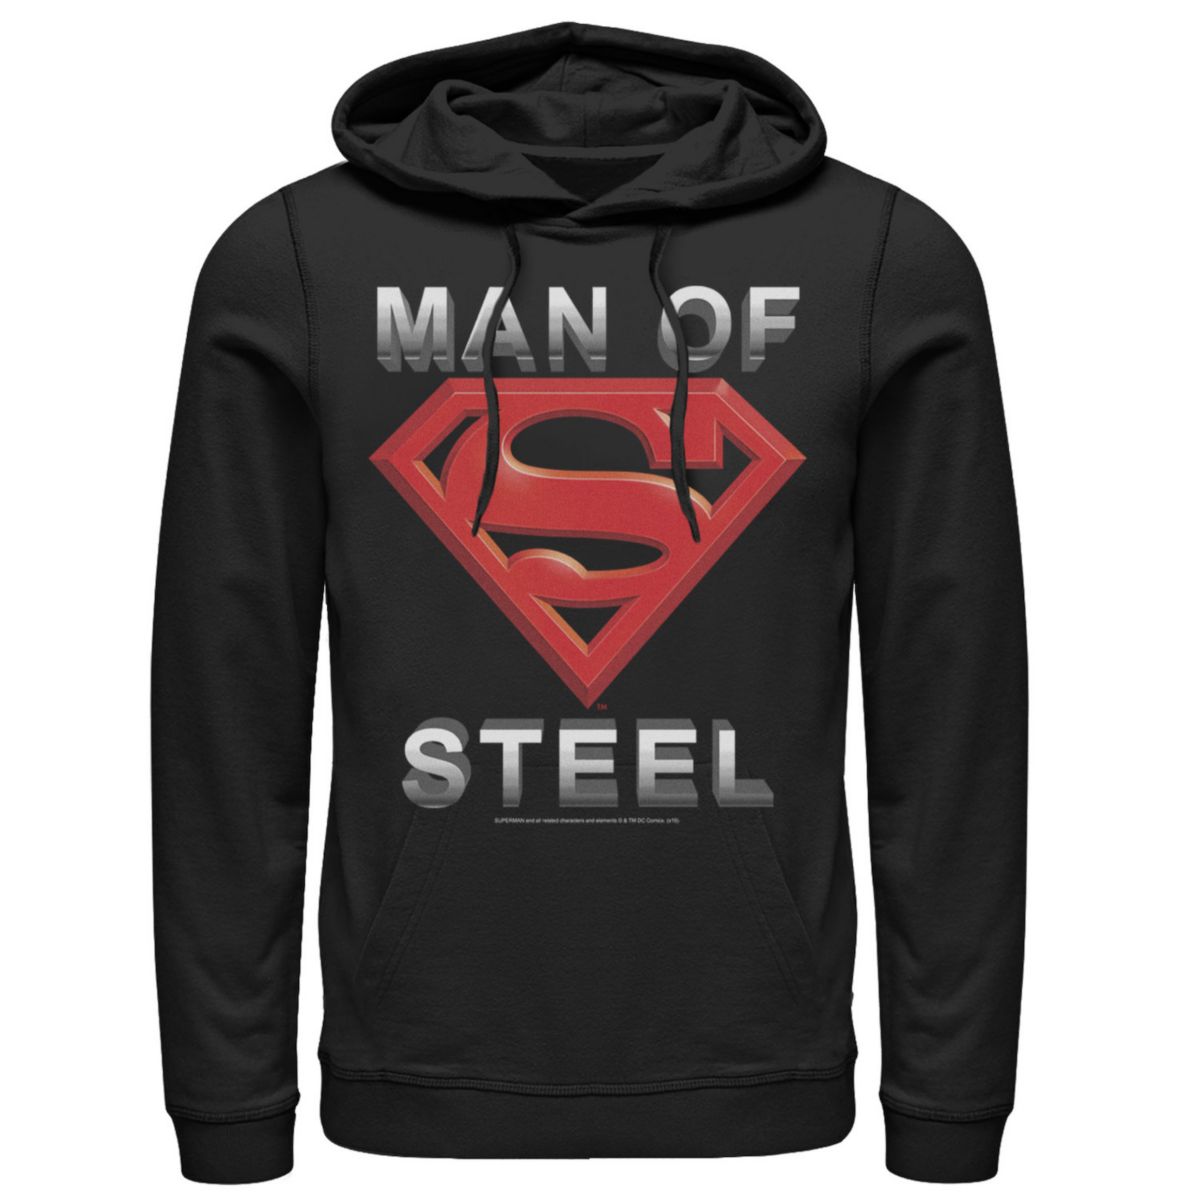 Мужская толстовка с капюшоном с надписью DC Comics Superman Man Of Steel с логотипом DC Comics